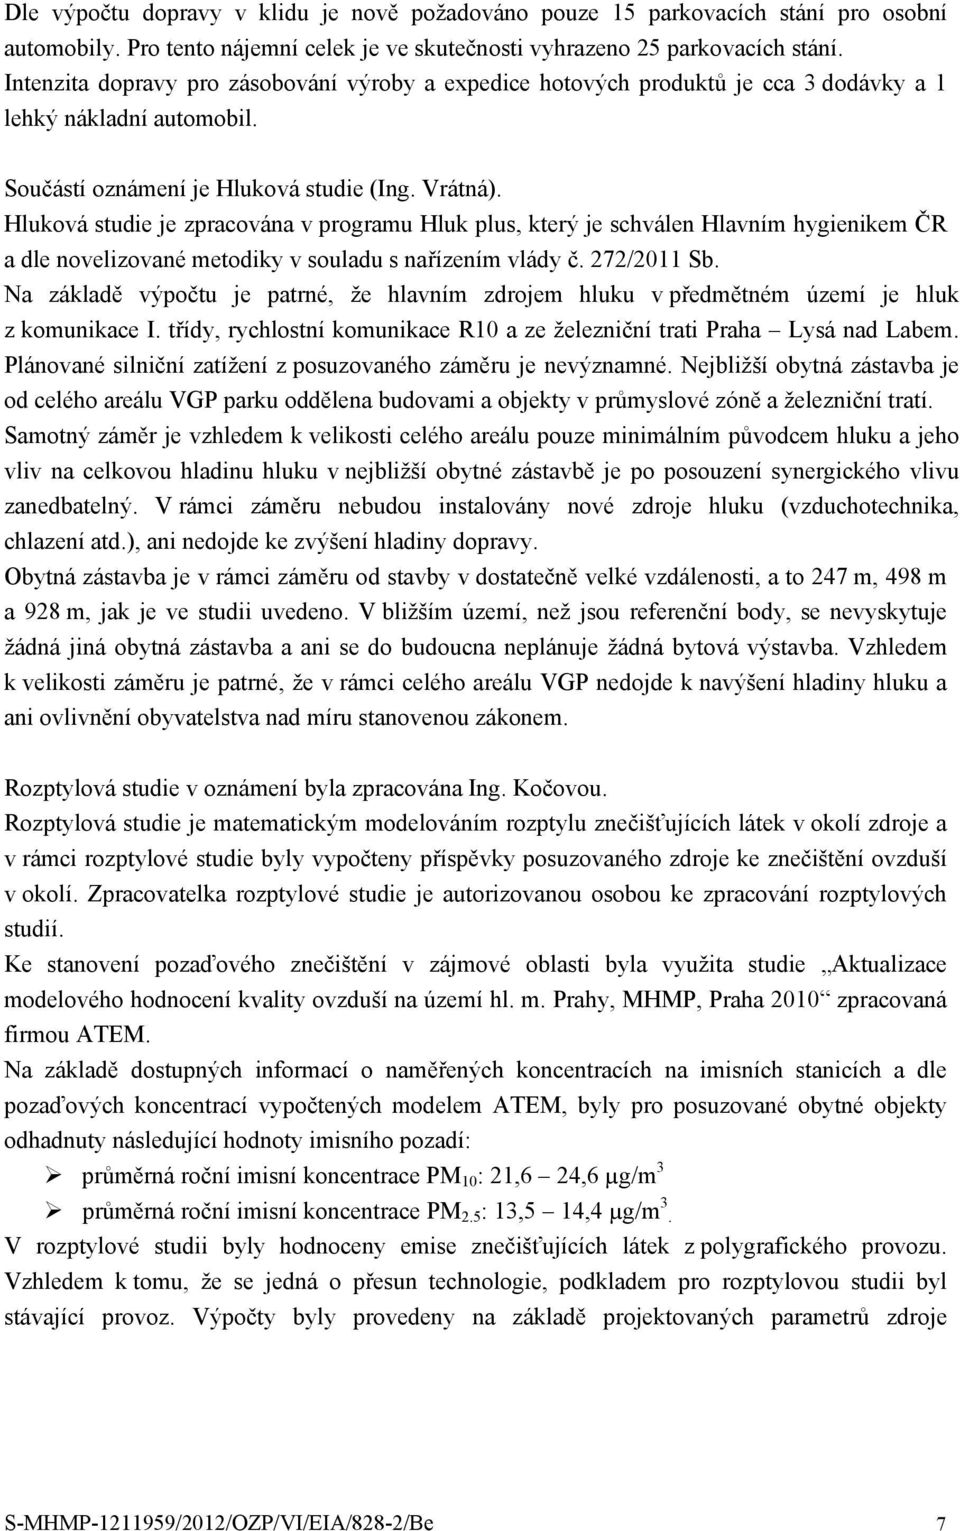 Hluková studie je zpracována v programu Hluk plus, který je schválen Hlavním hygienikem ČR a dle novelizované metodiky v souladu s nařízením vlády č. 272/2011 Sb.